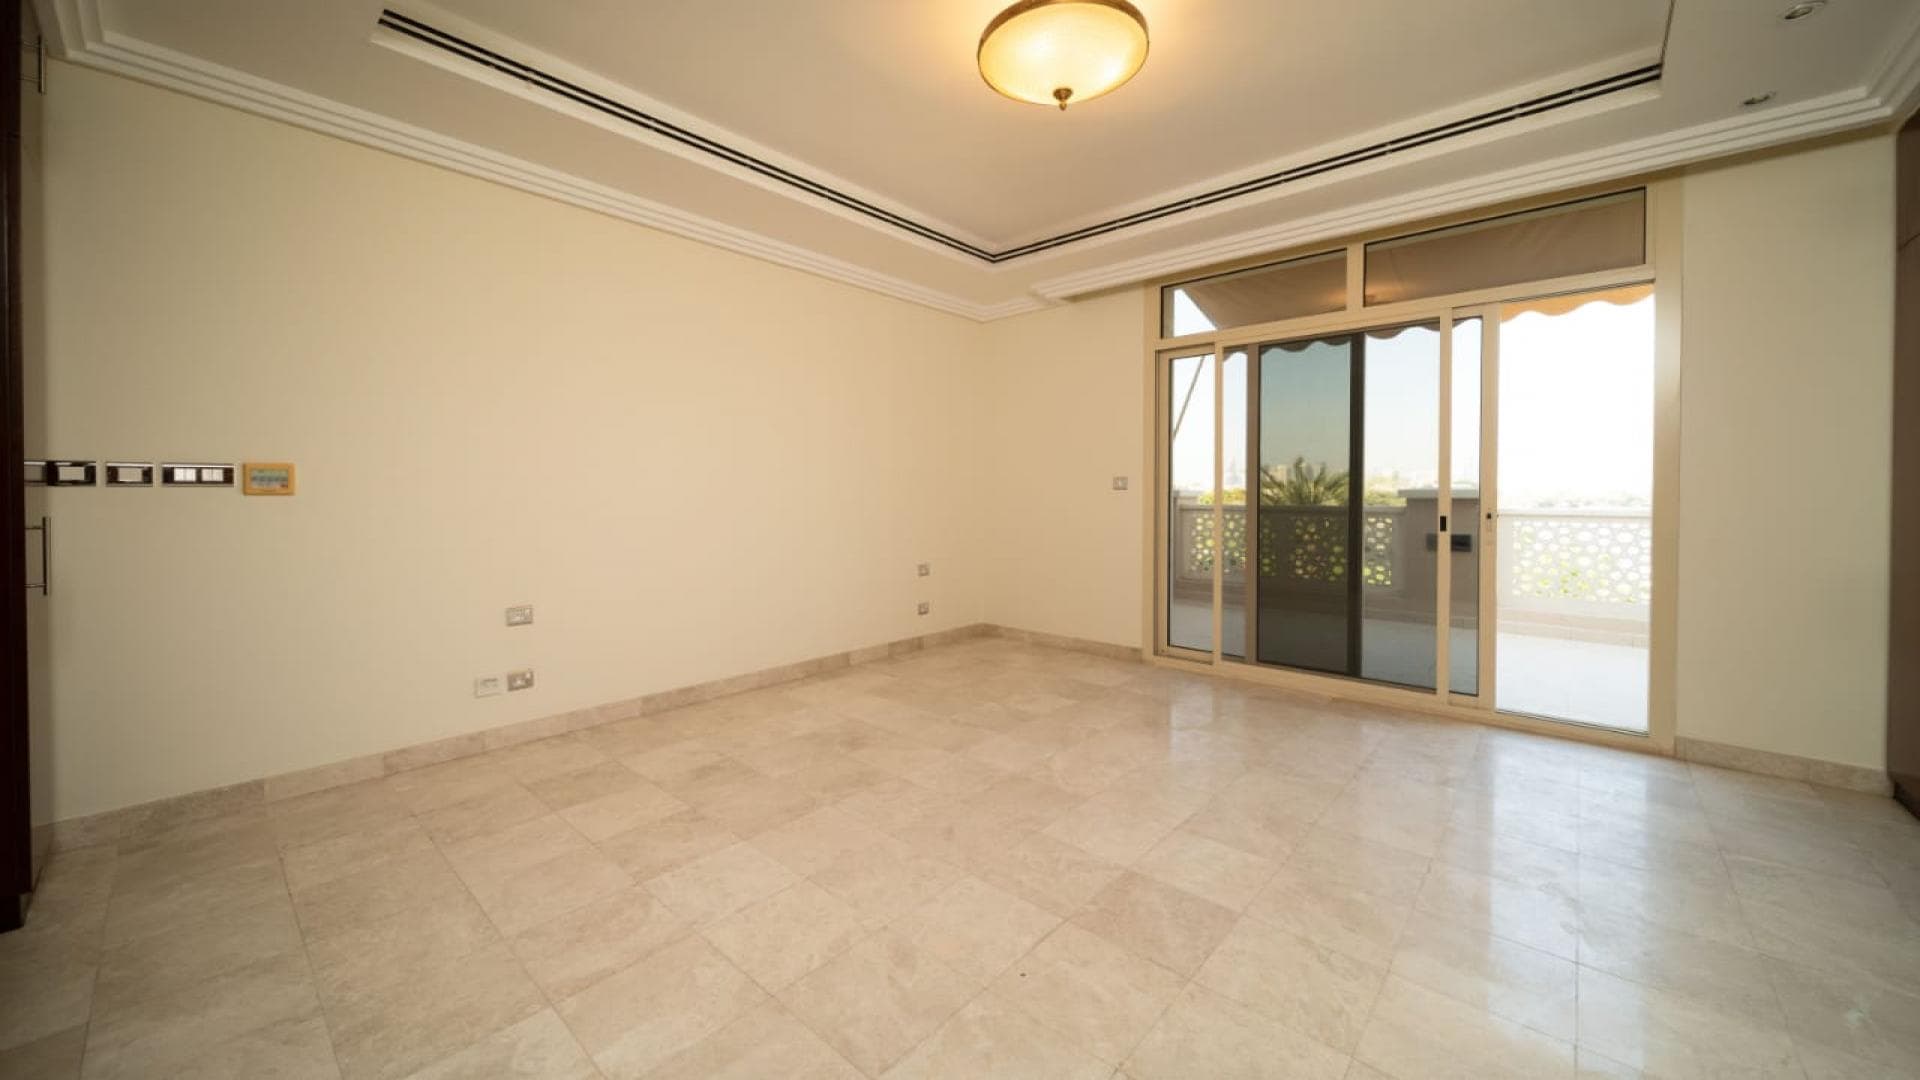 3 Bedroom Villa For Rent Fatimah Saleh Building Lp38967 1715861f28a8fa00.jpg